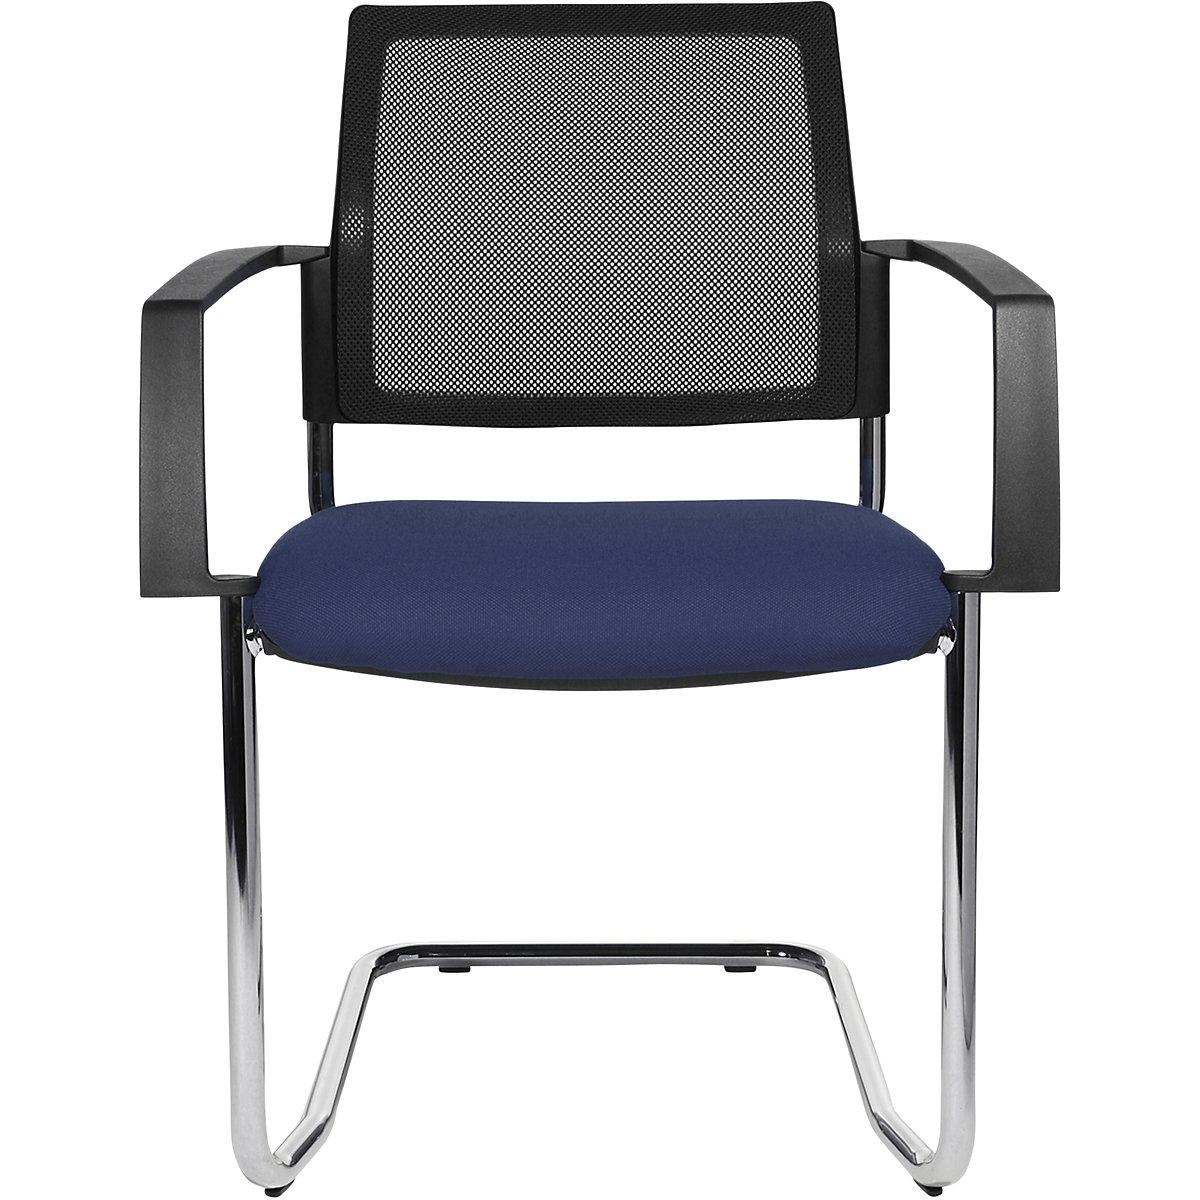 Mesh stapelstoel – Topstar, sledestoel, VE = 2 stuks, zitting blauw, frame chroom-5